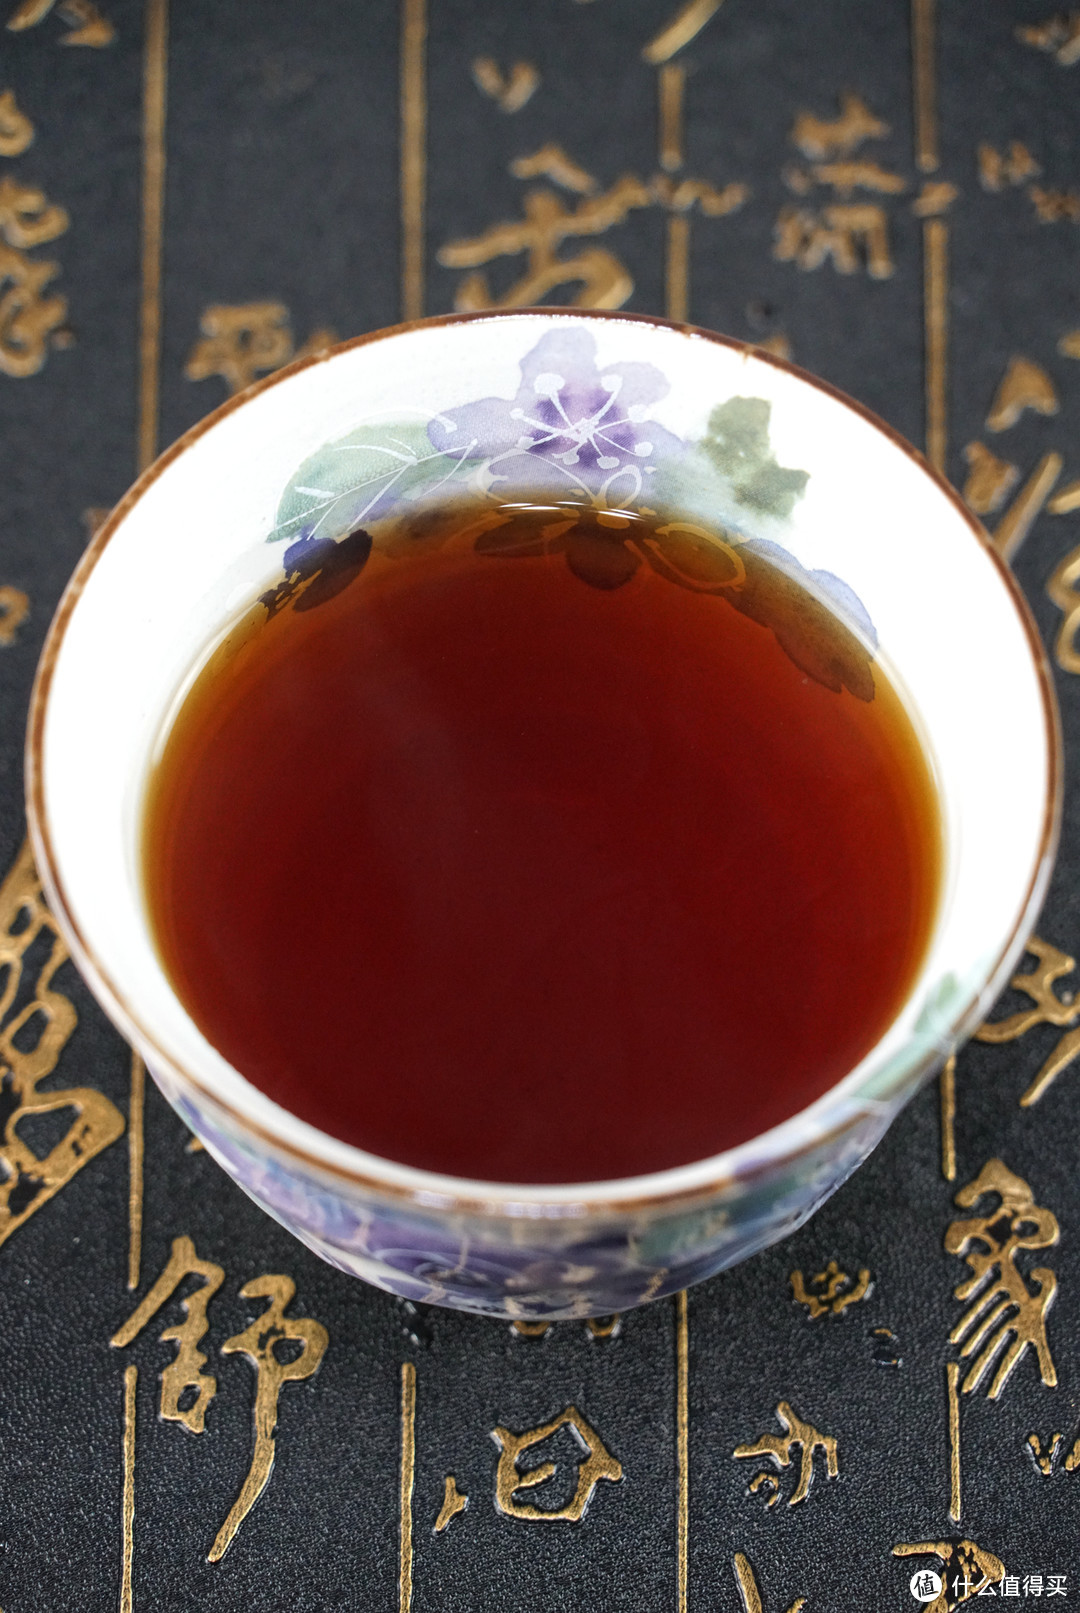 茶与茶器：Ceramic 和蓝 美浓烧 花工房 茶壶双杯套装+AHMAD 亚曼 阿萨姆红茶品鉴